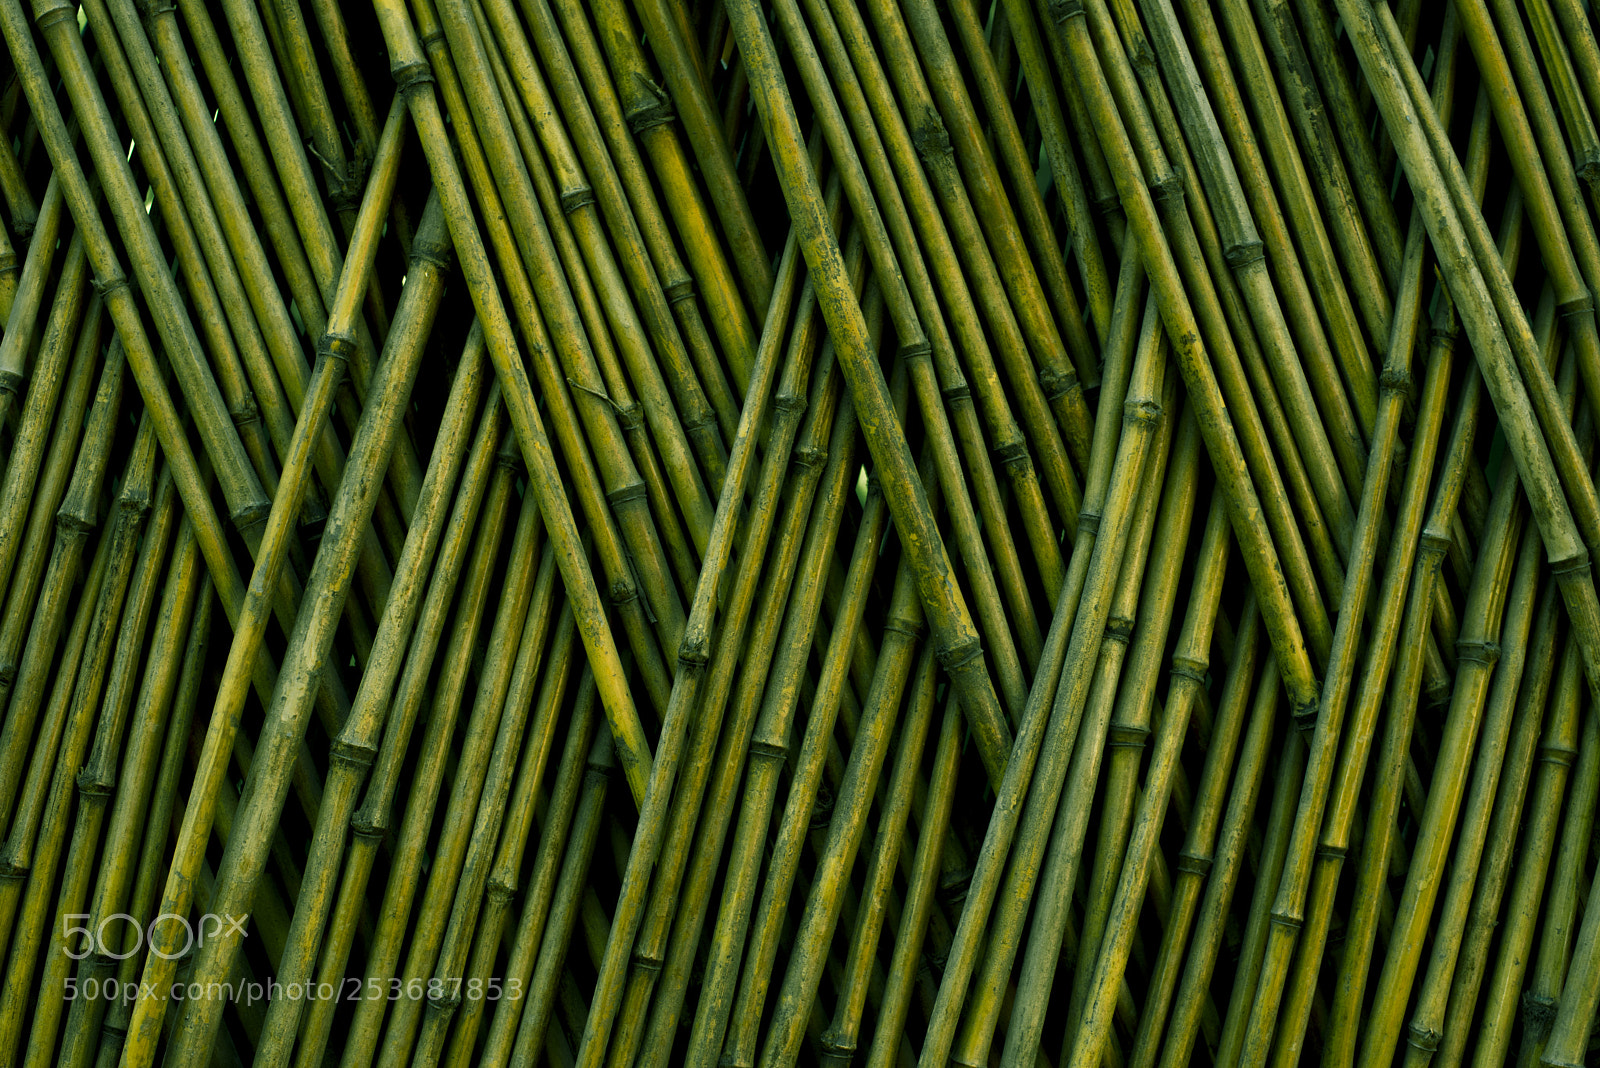 Nikon D750 sample photo. Woven bamboo photography